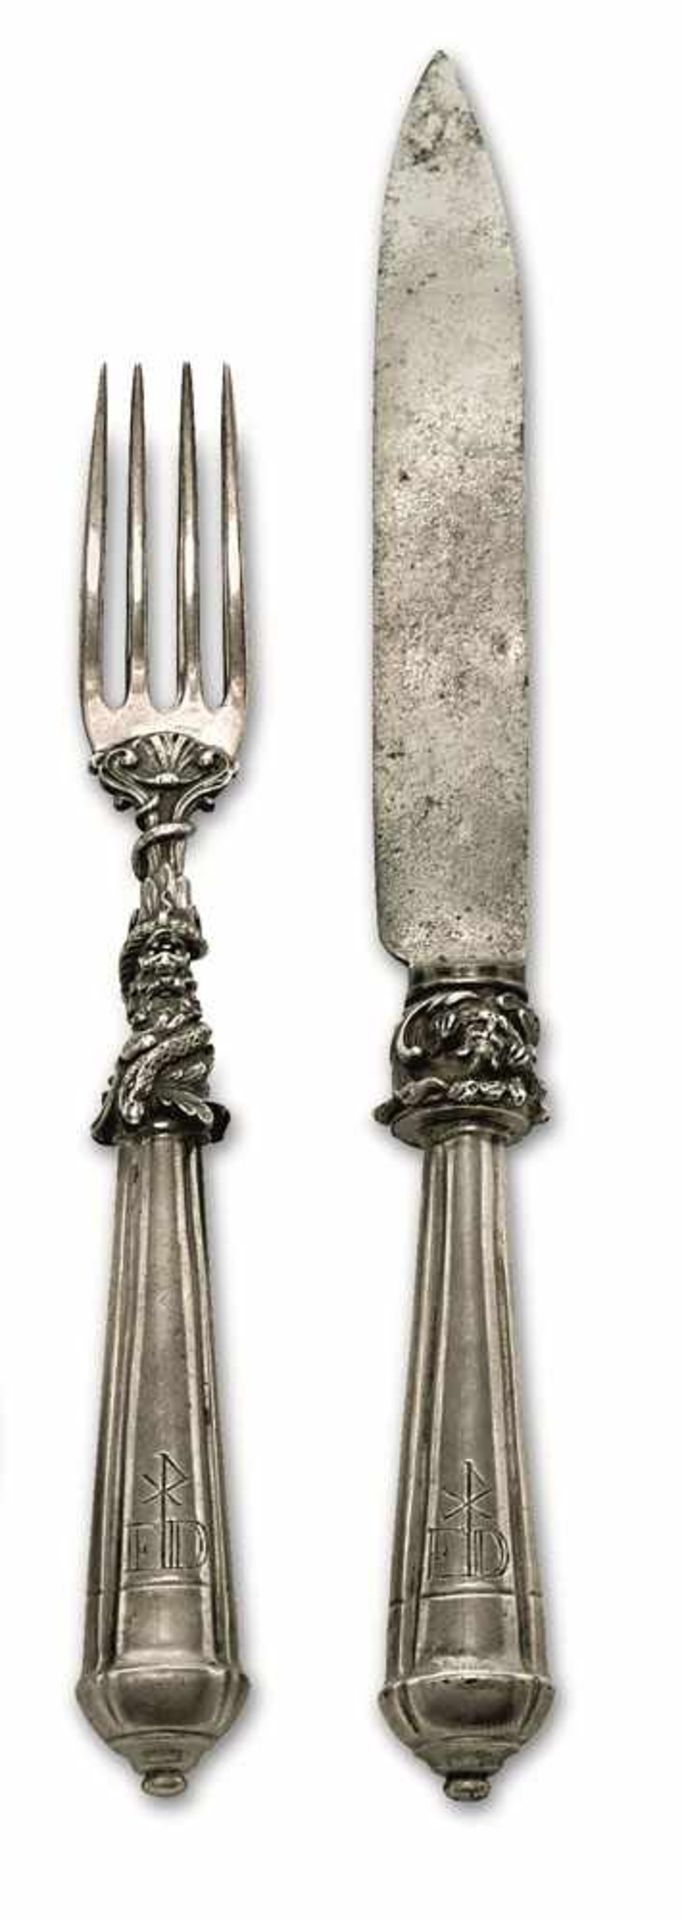 Messer und Gabel Silber u.a. Konische, vierpassige Griffe mit graviertem Monogramm "ED".